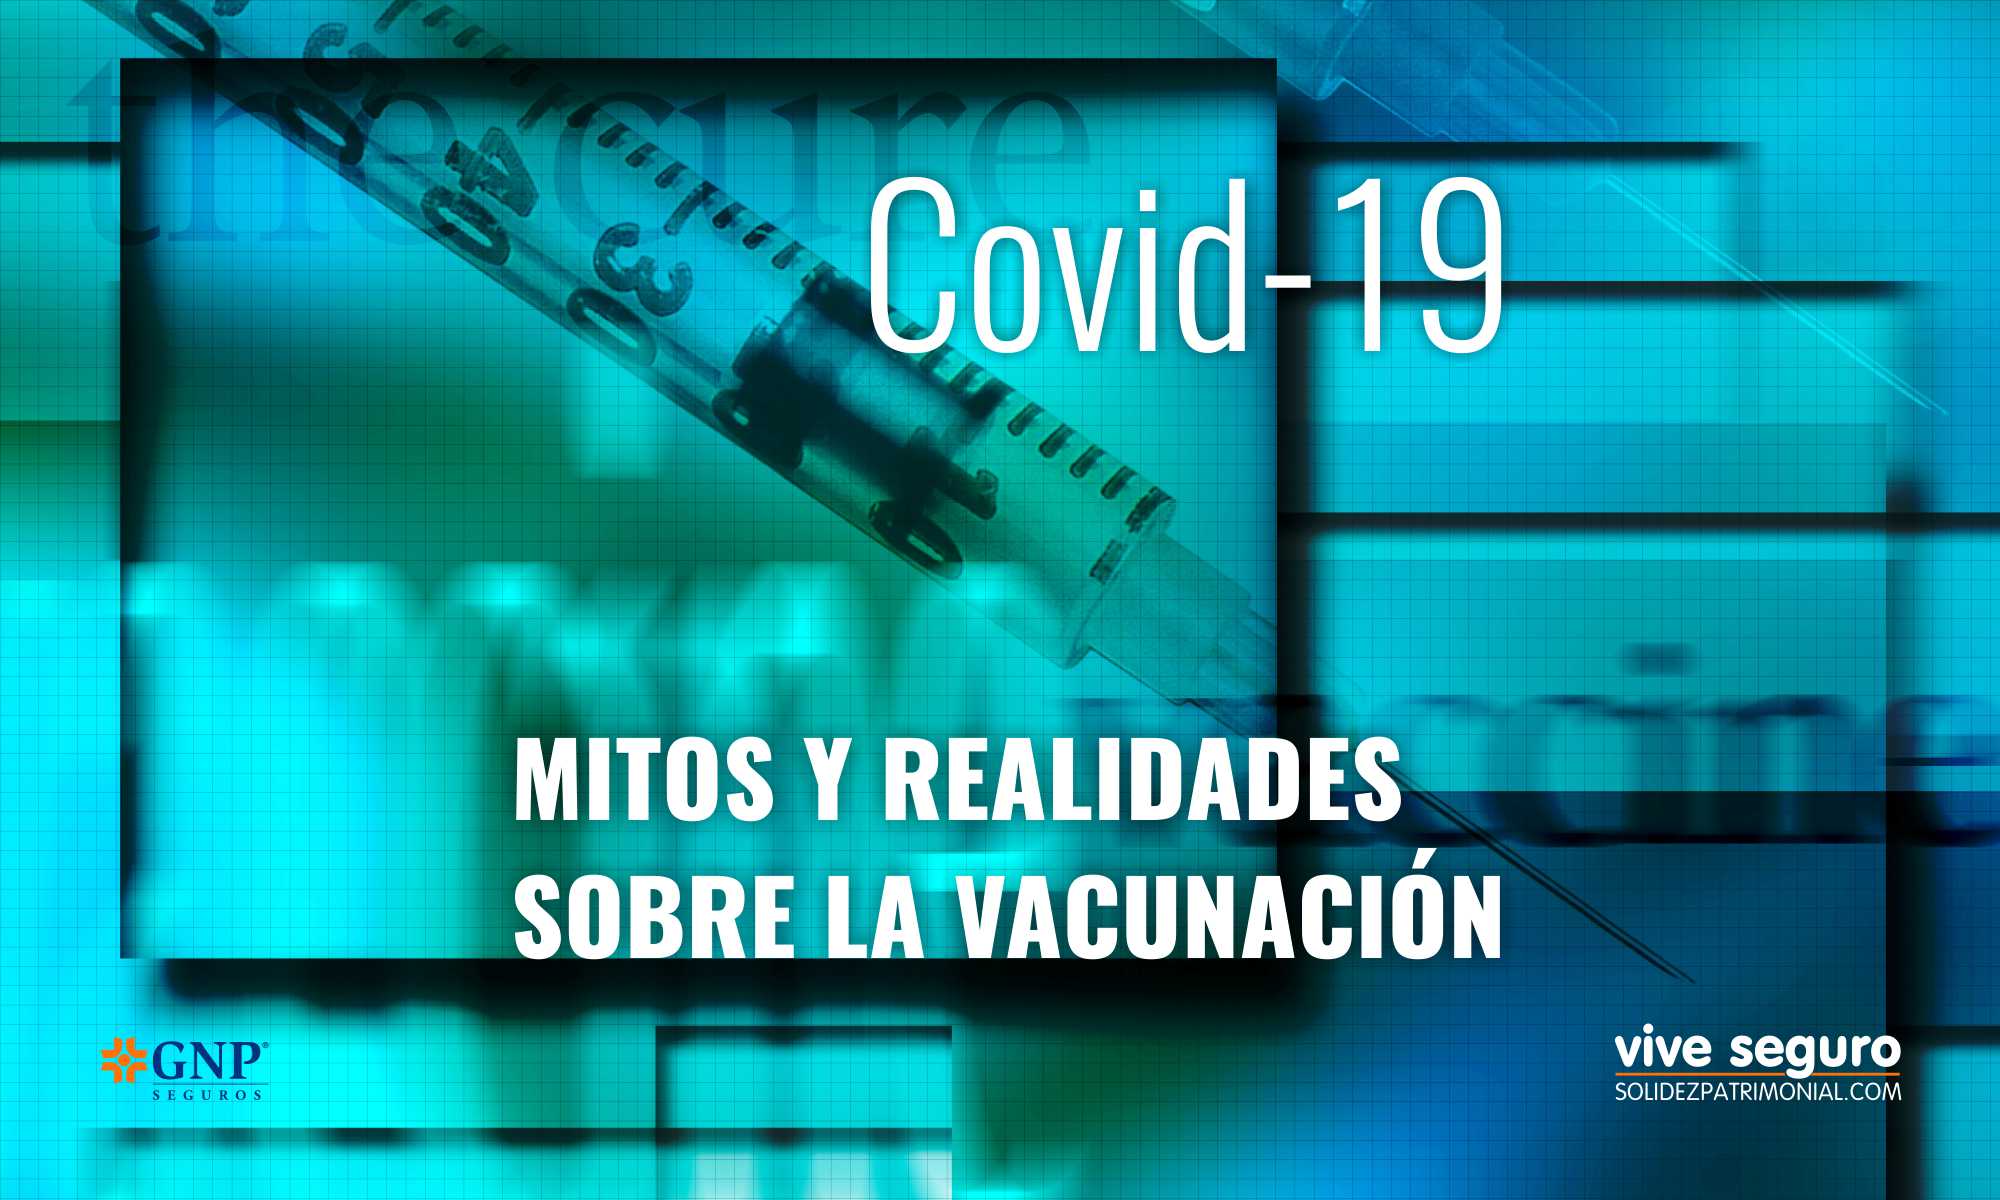 Mitos y realidades de la vacunación Covid-19